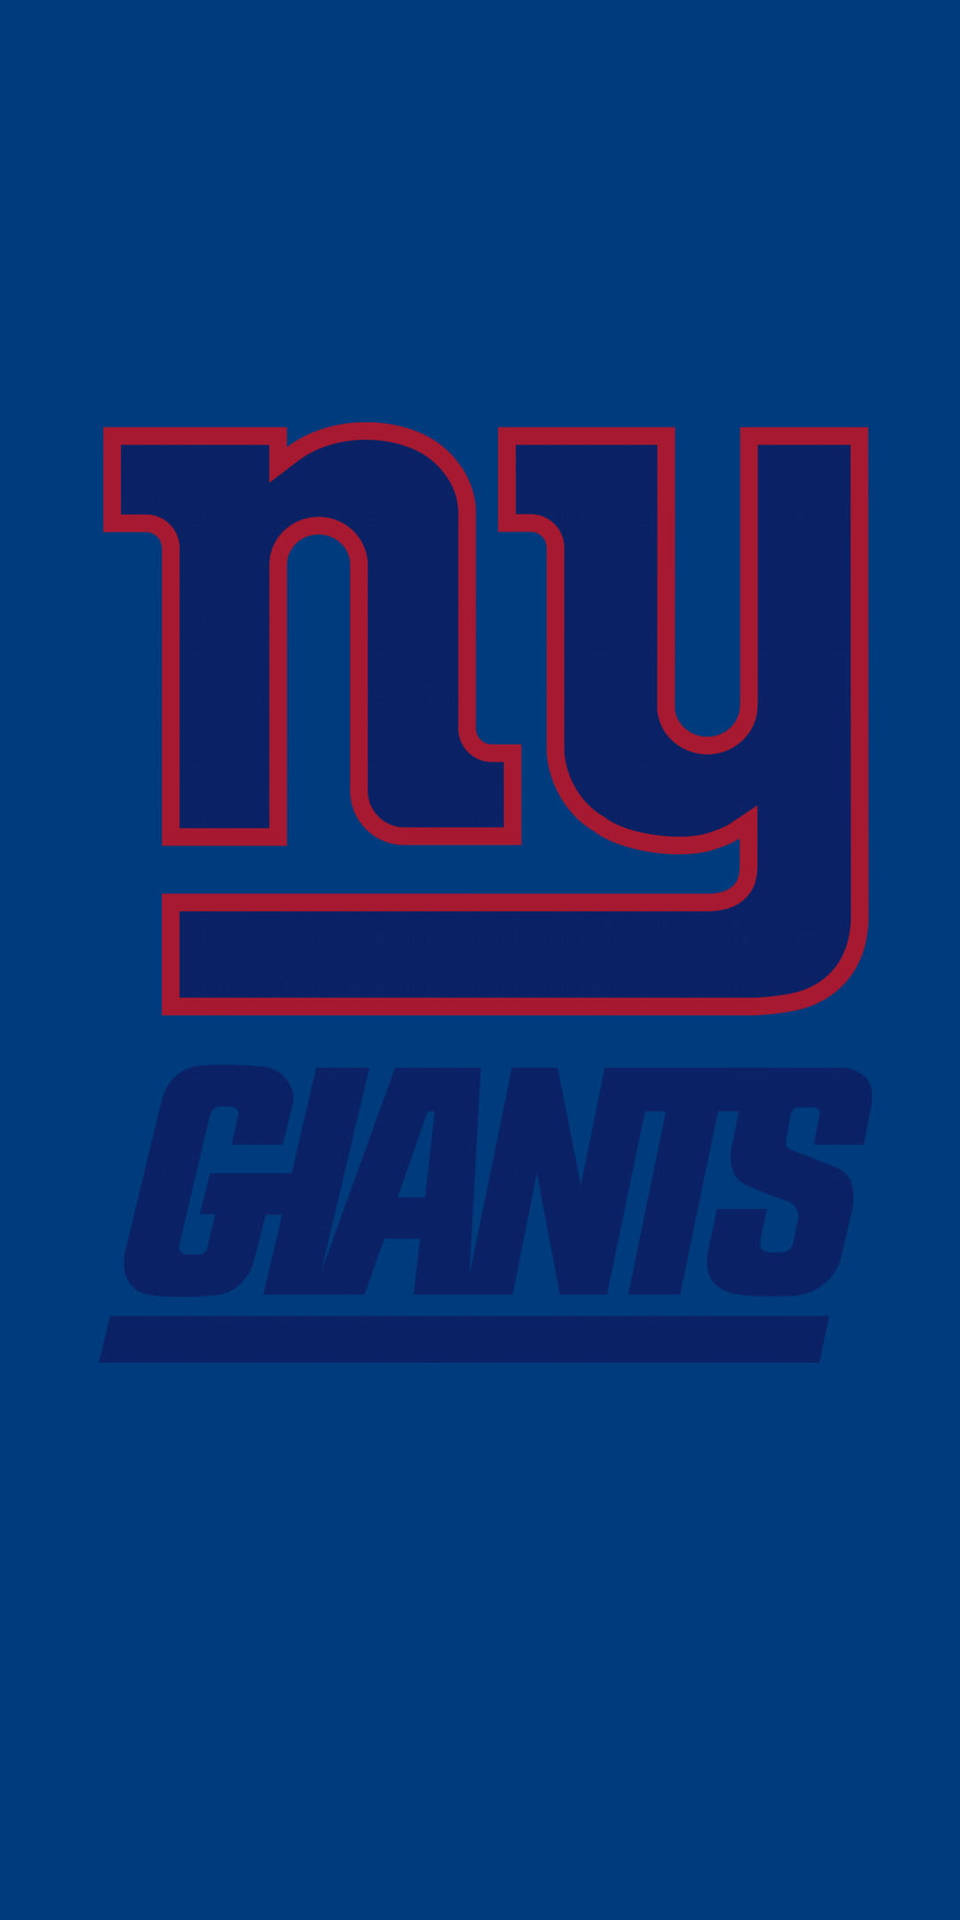 New York Giants Nfl Team Logo